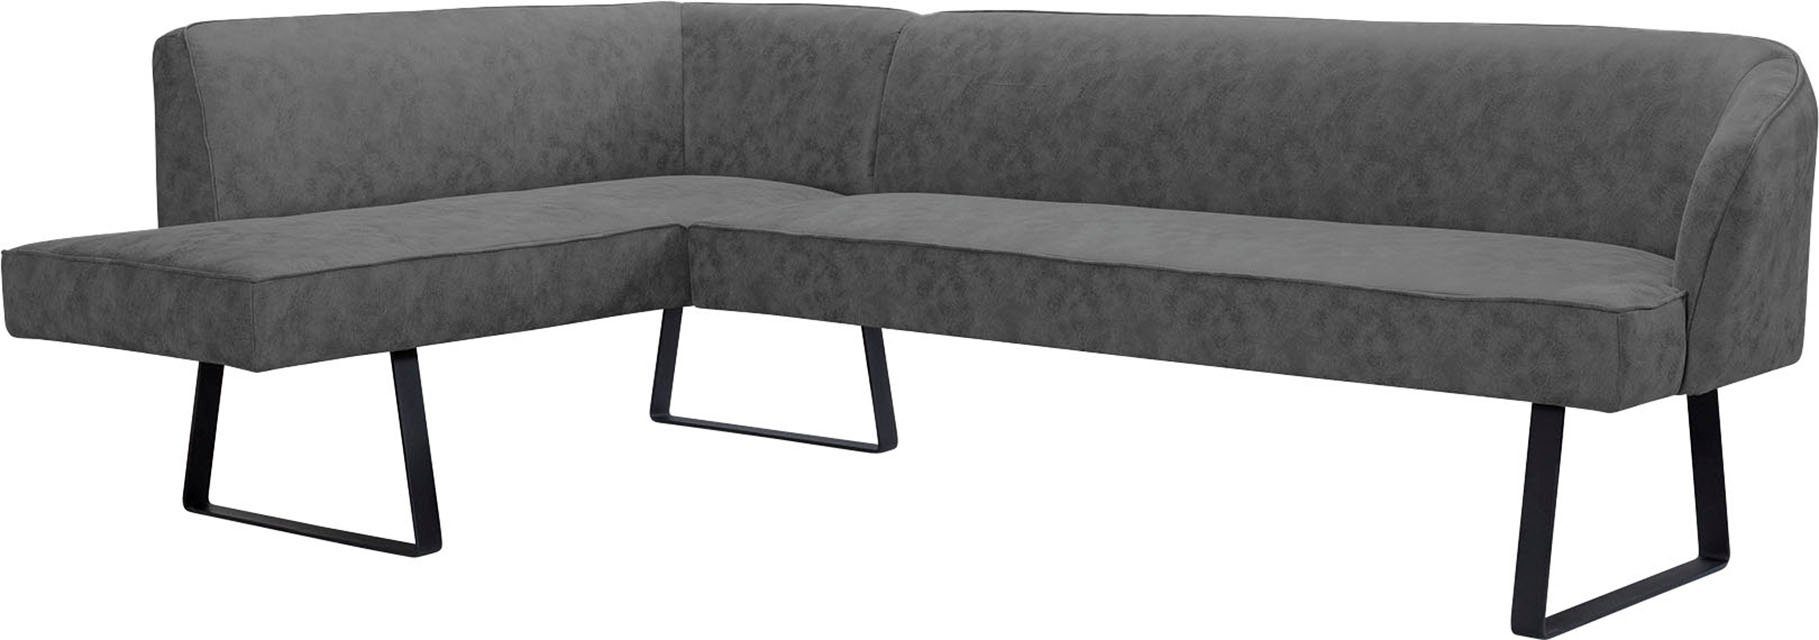 exxpo - Qualitäten und Americano, Bezug Eckbank sofa Keder mit Metallfüßen, in fashion verschiedenen